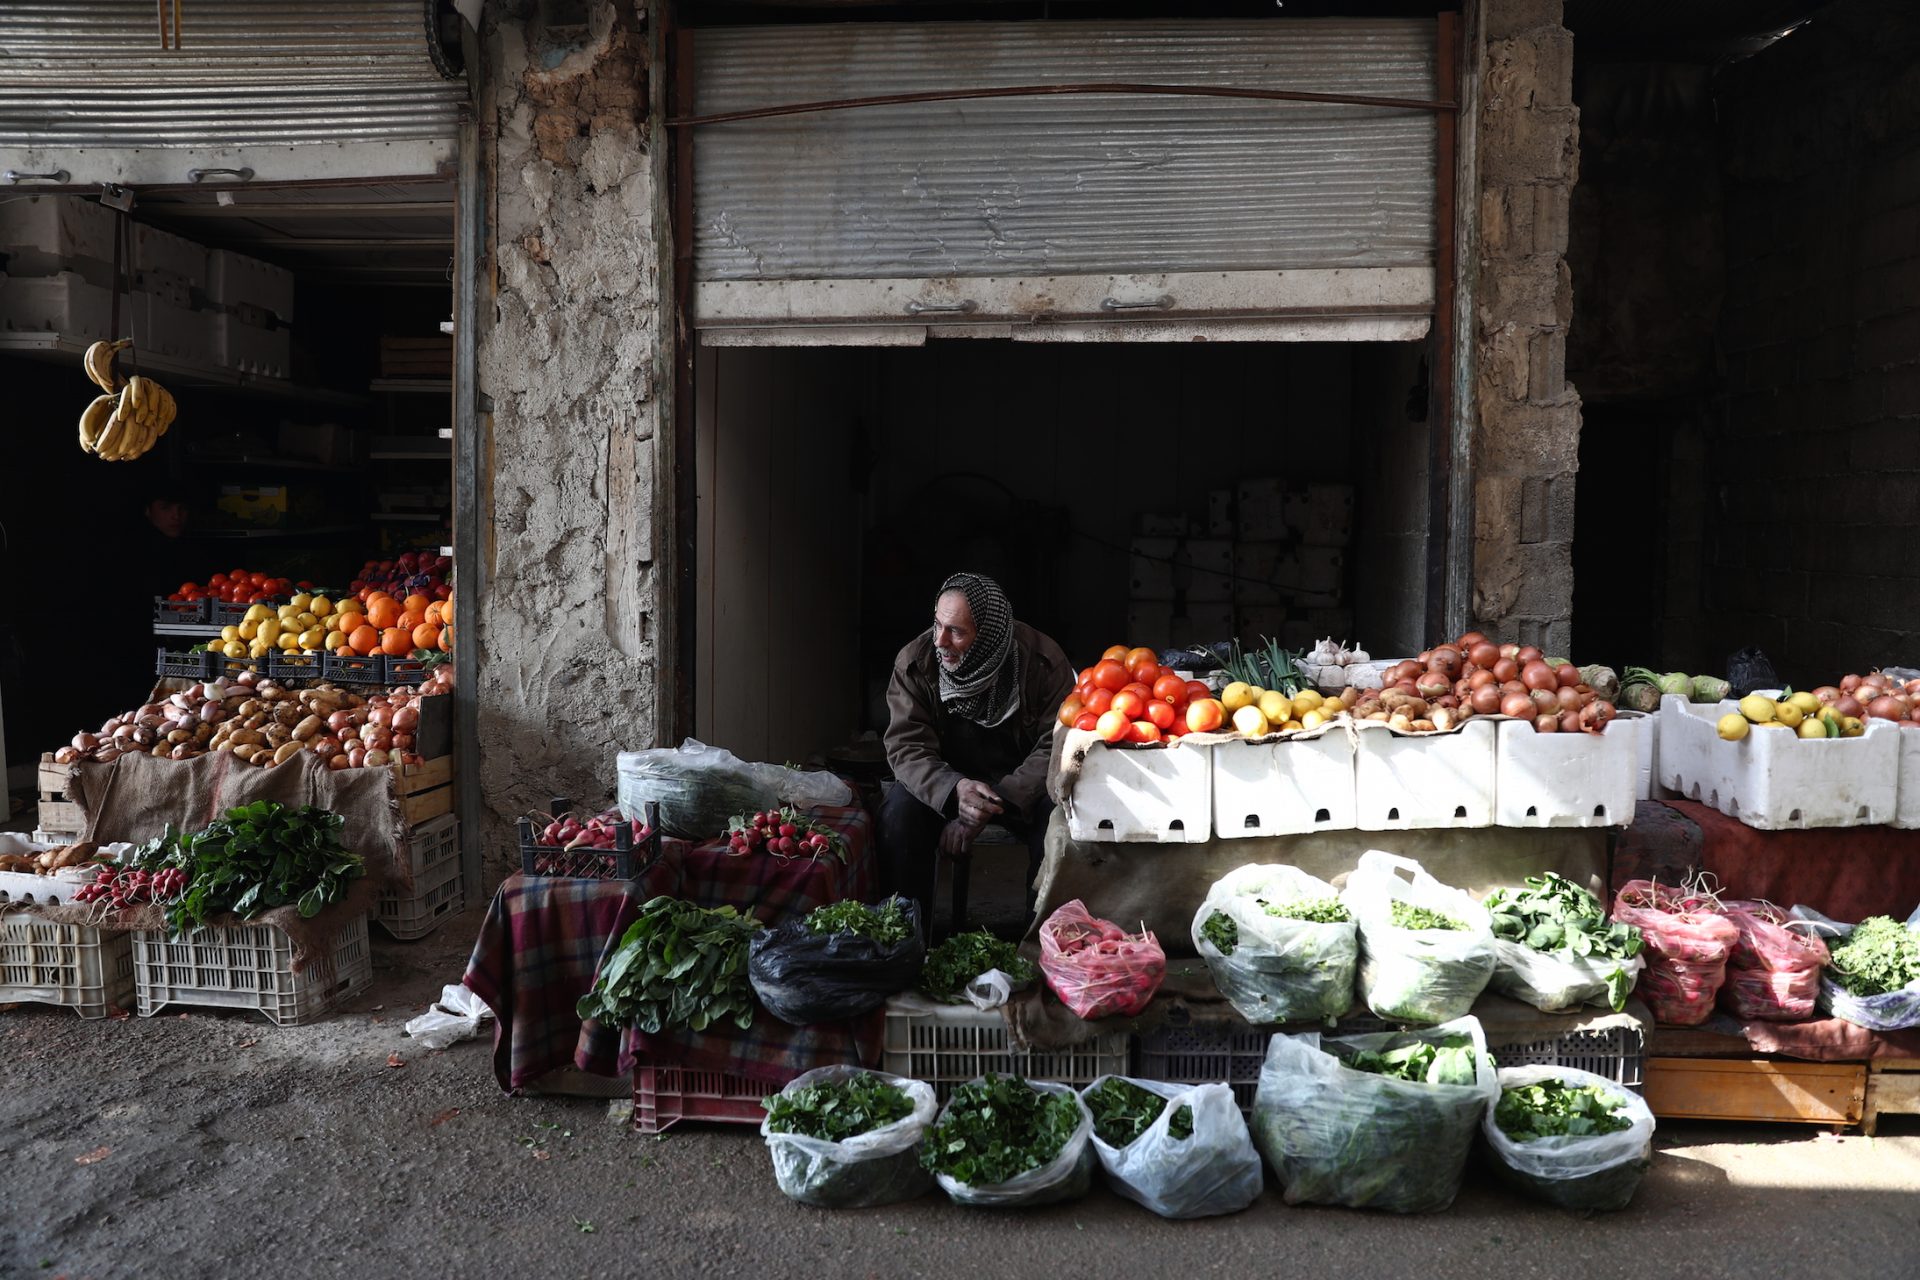 الاوضاع المعيشية الصعبة في سوريا